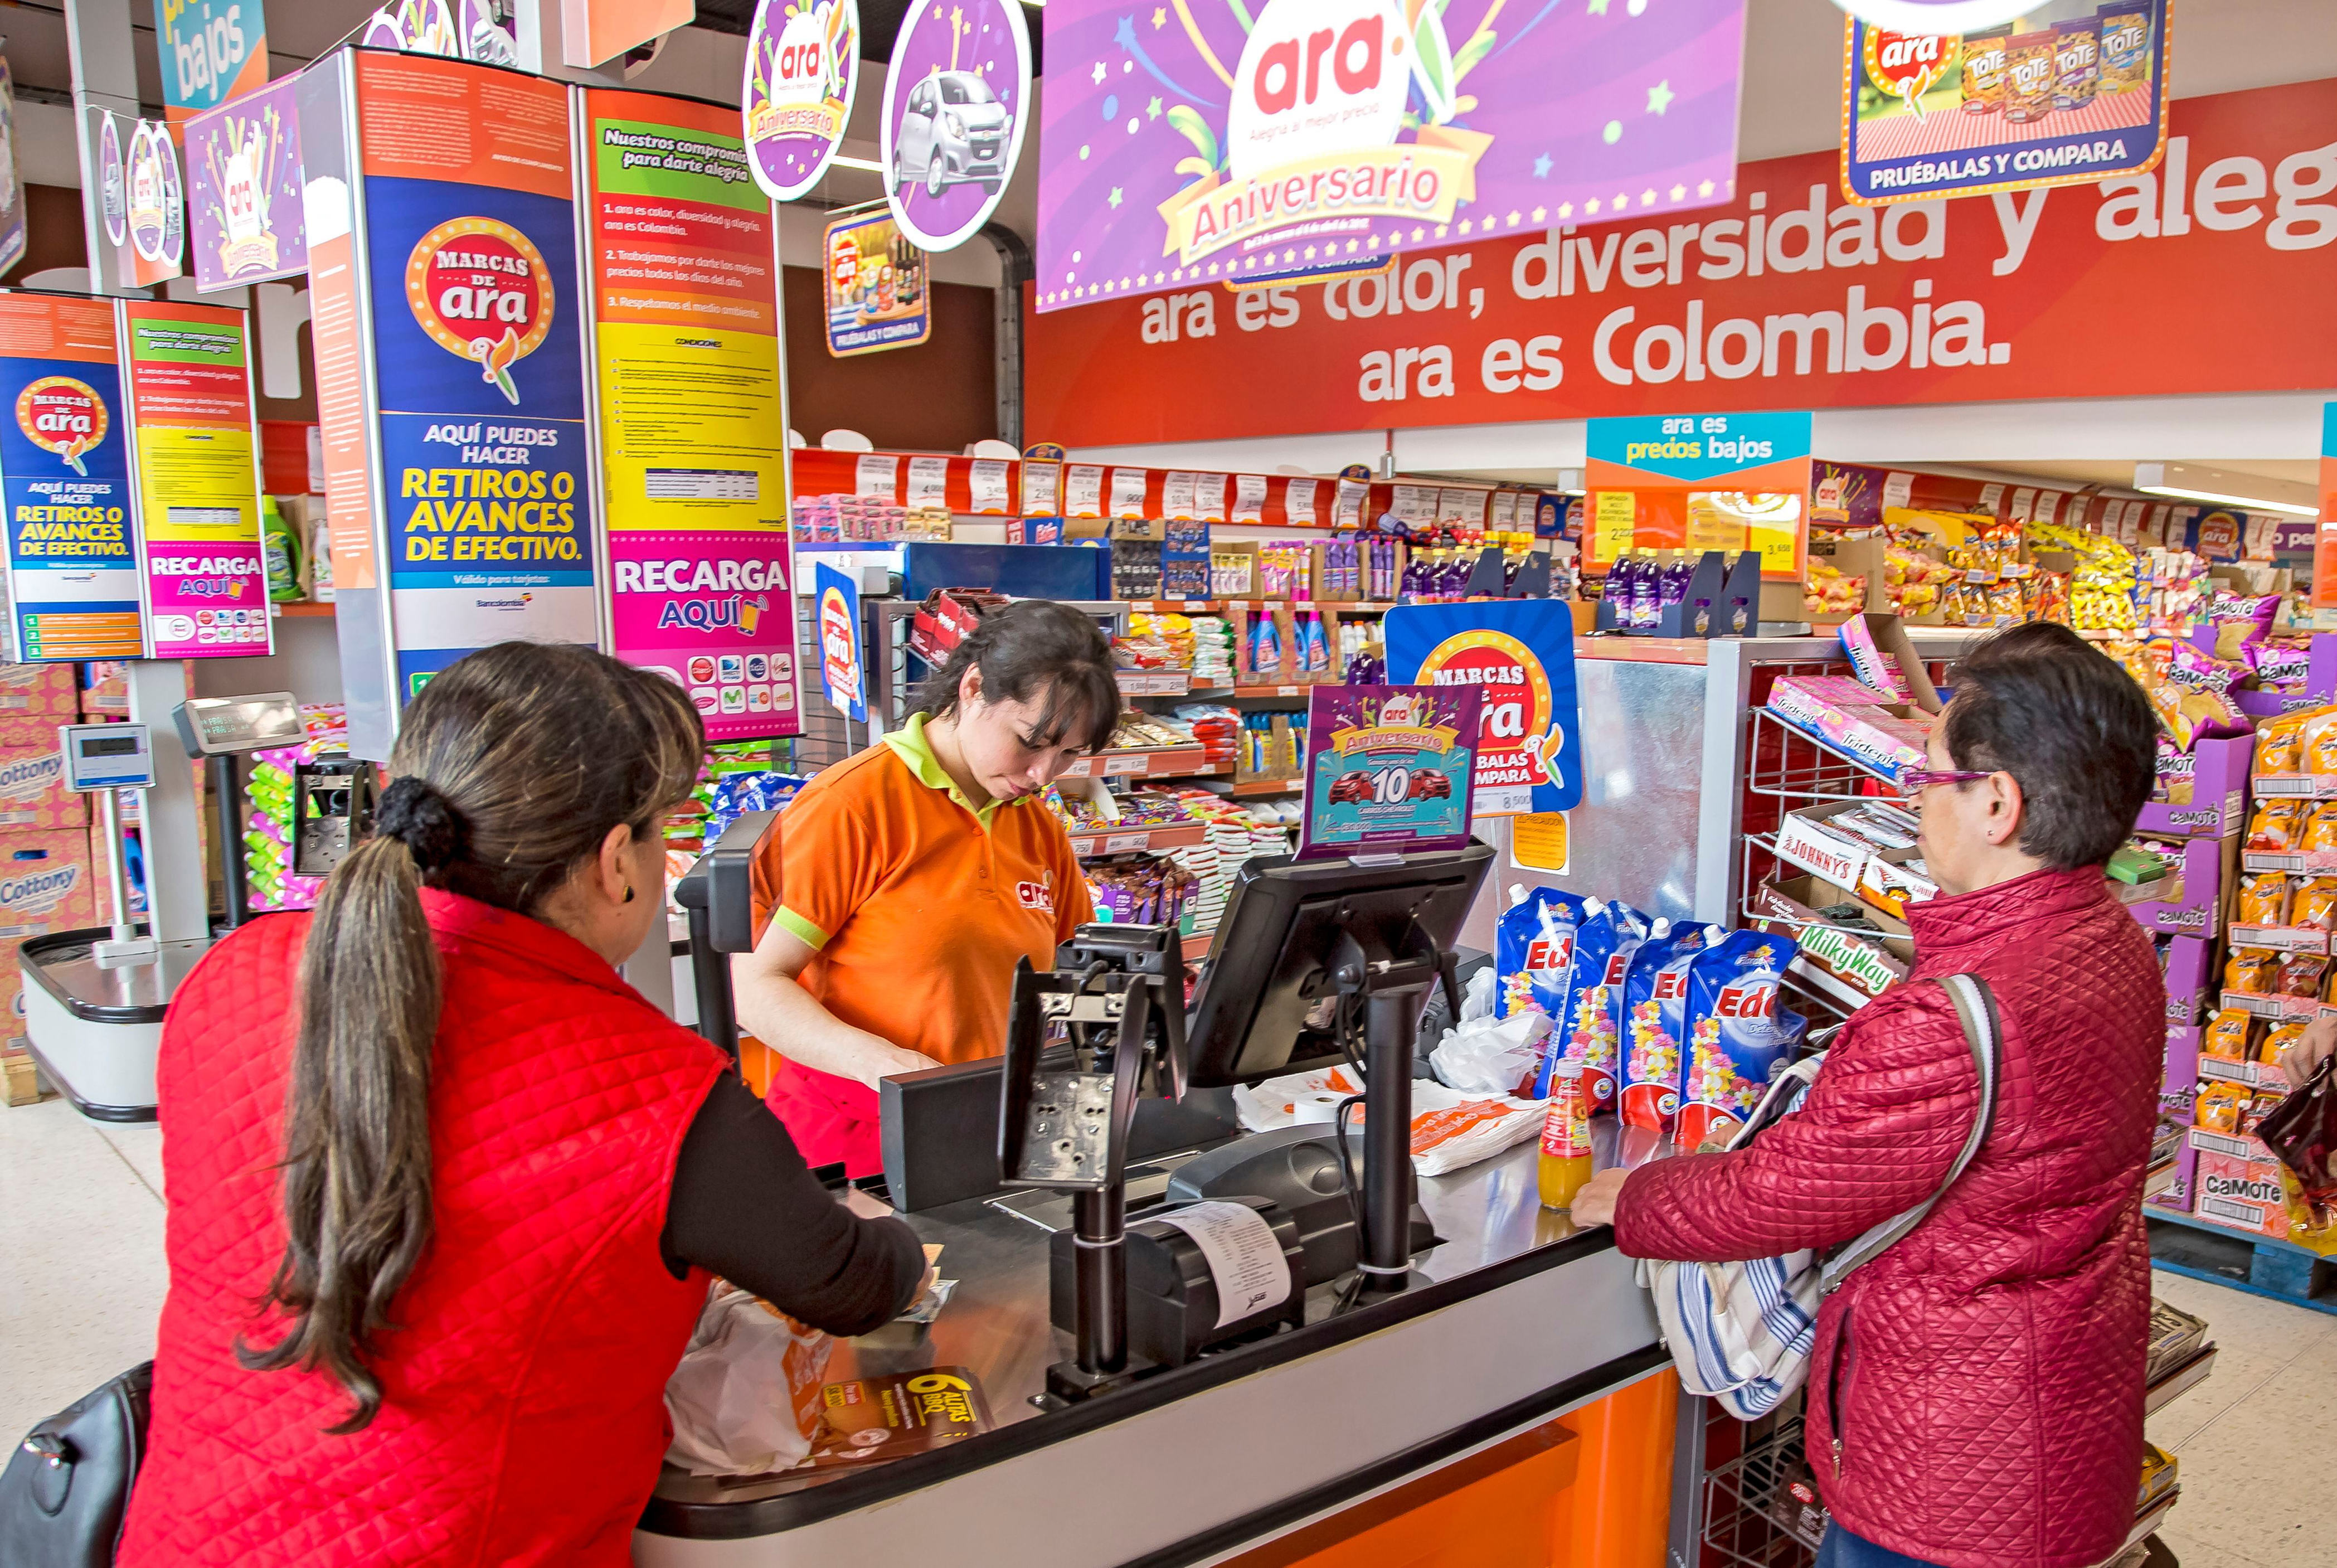 ara busca trabajadores para varios de sus locales en colombia: estos son los salarios y beneficios que ofrecen